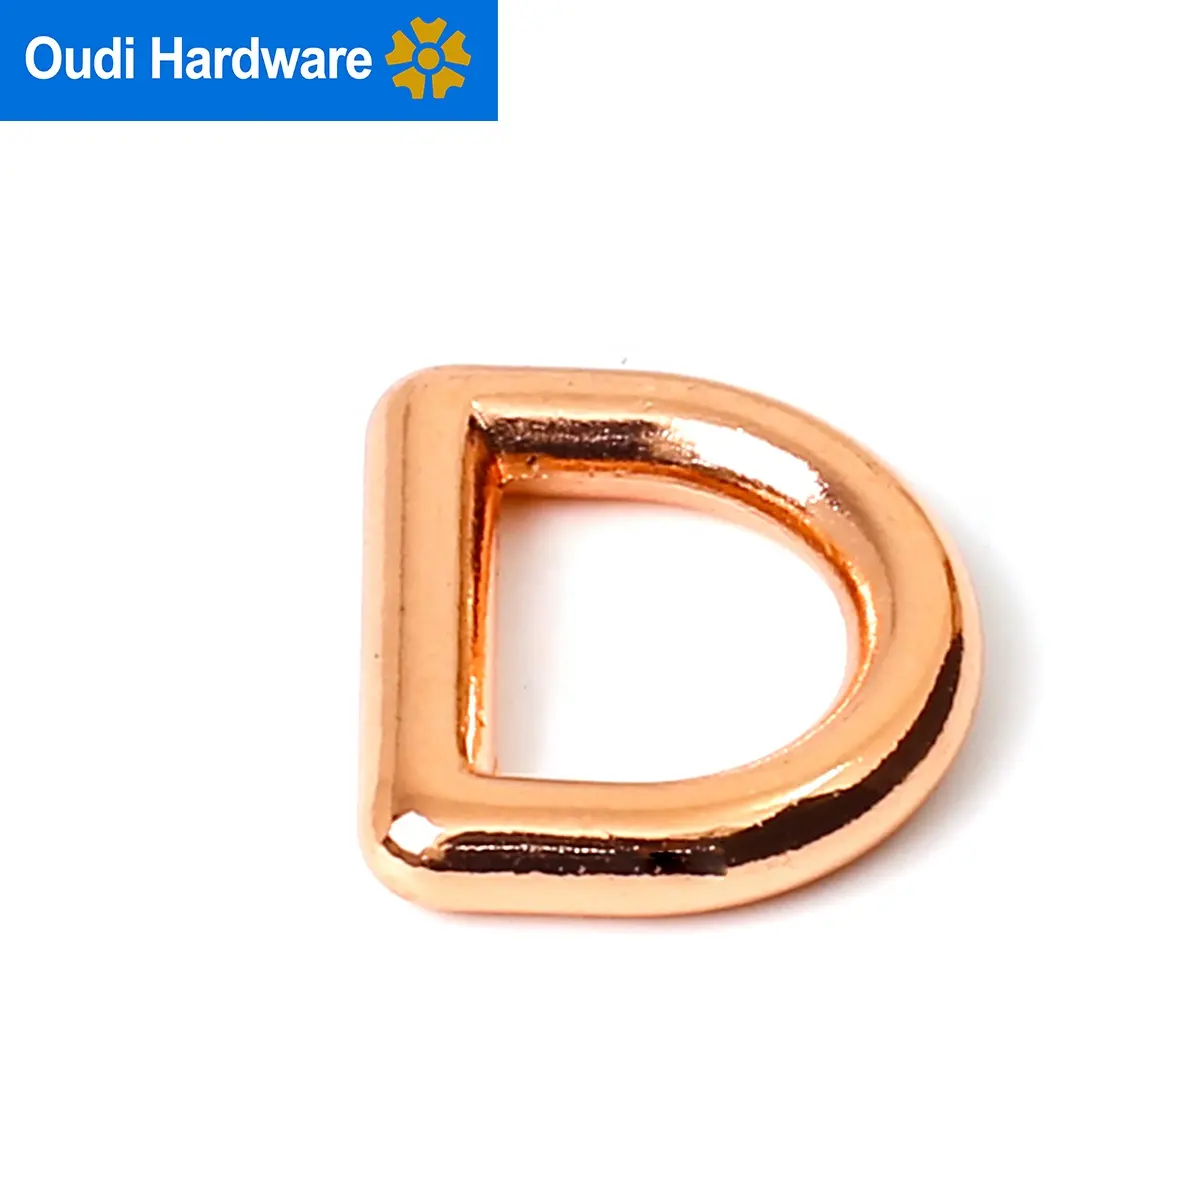 Металлическое D-образное кольцо на заказ из цинкового сплава для ошейника собаки, розовое золото, D-образное кольцо с пряжкой, размер 1 дюйм